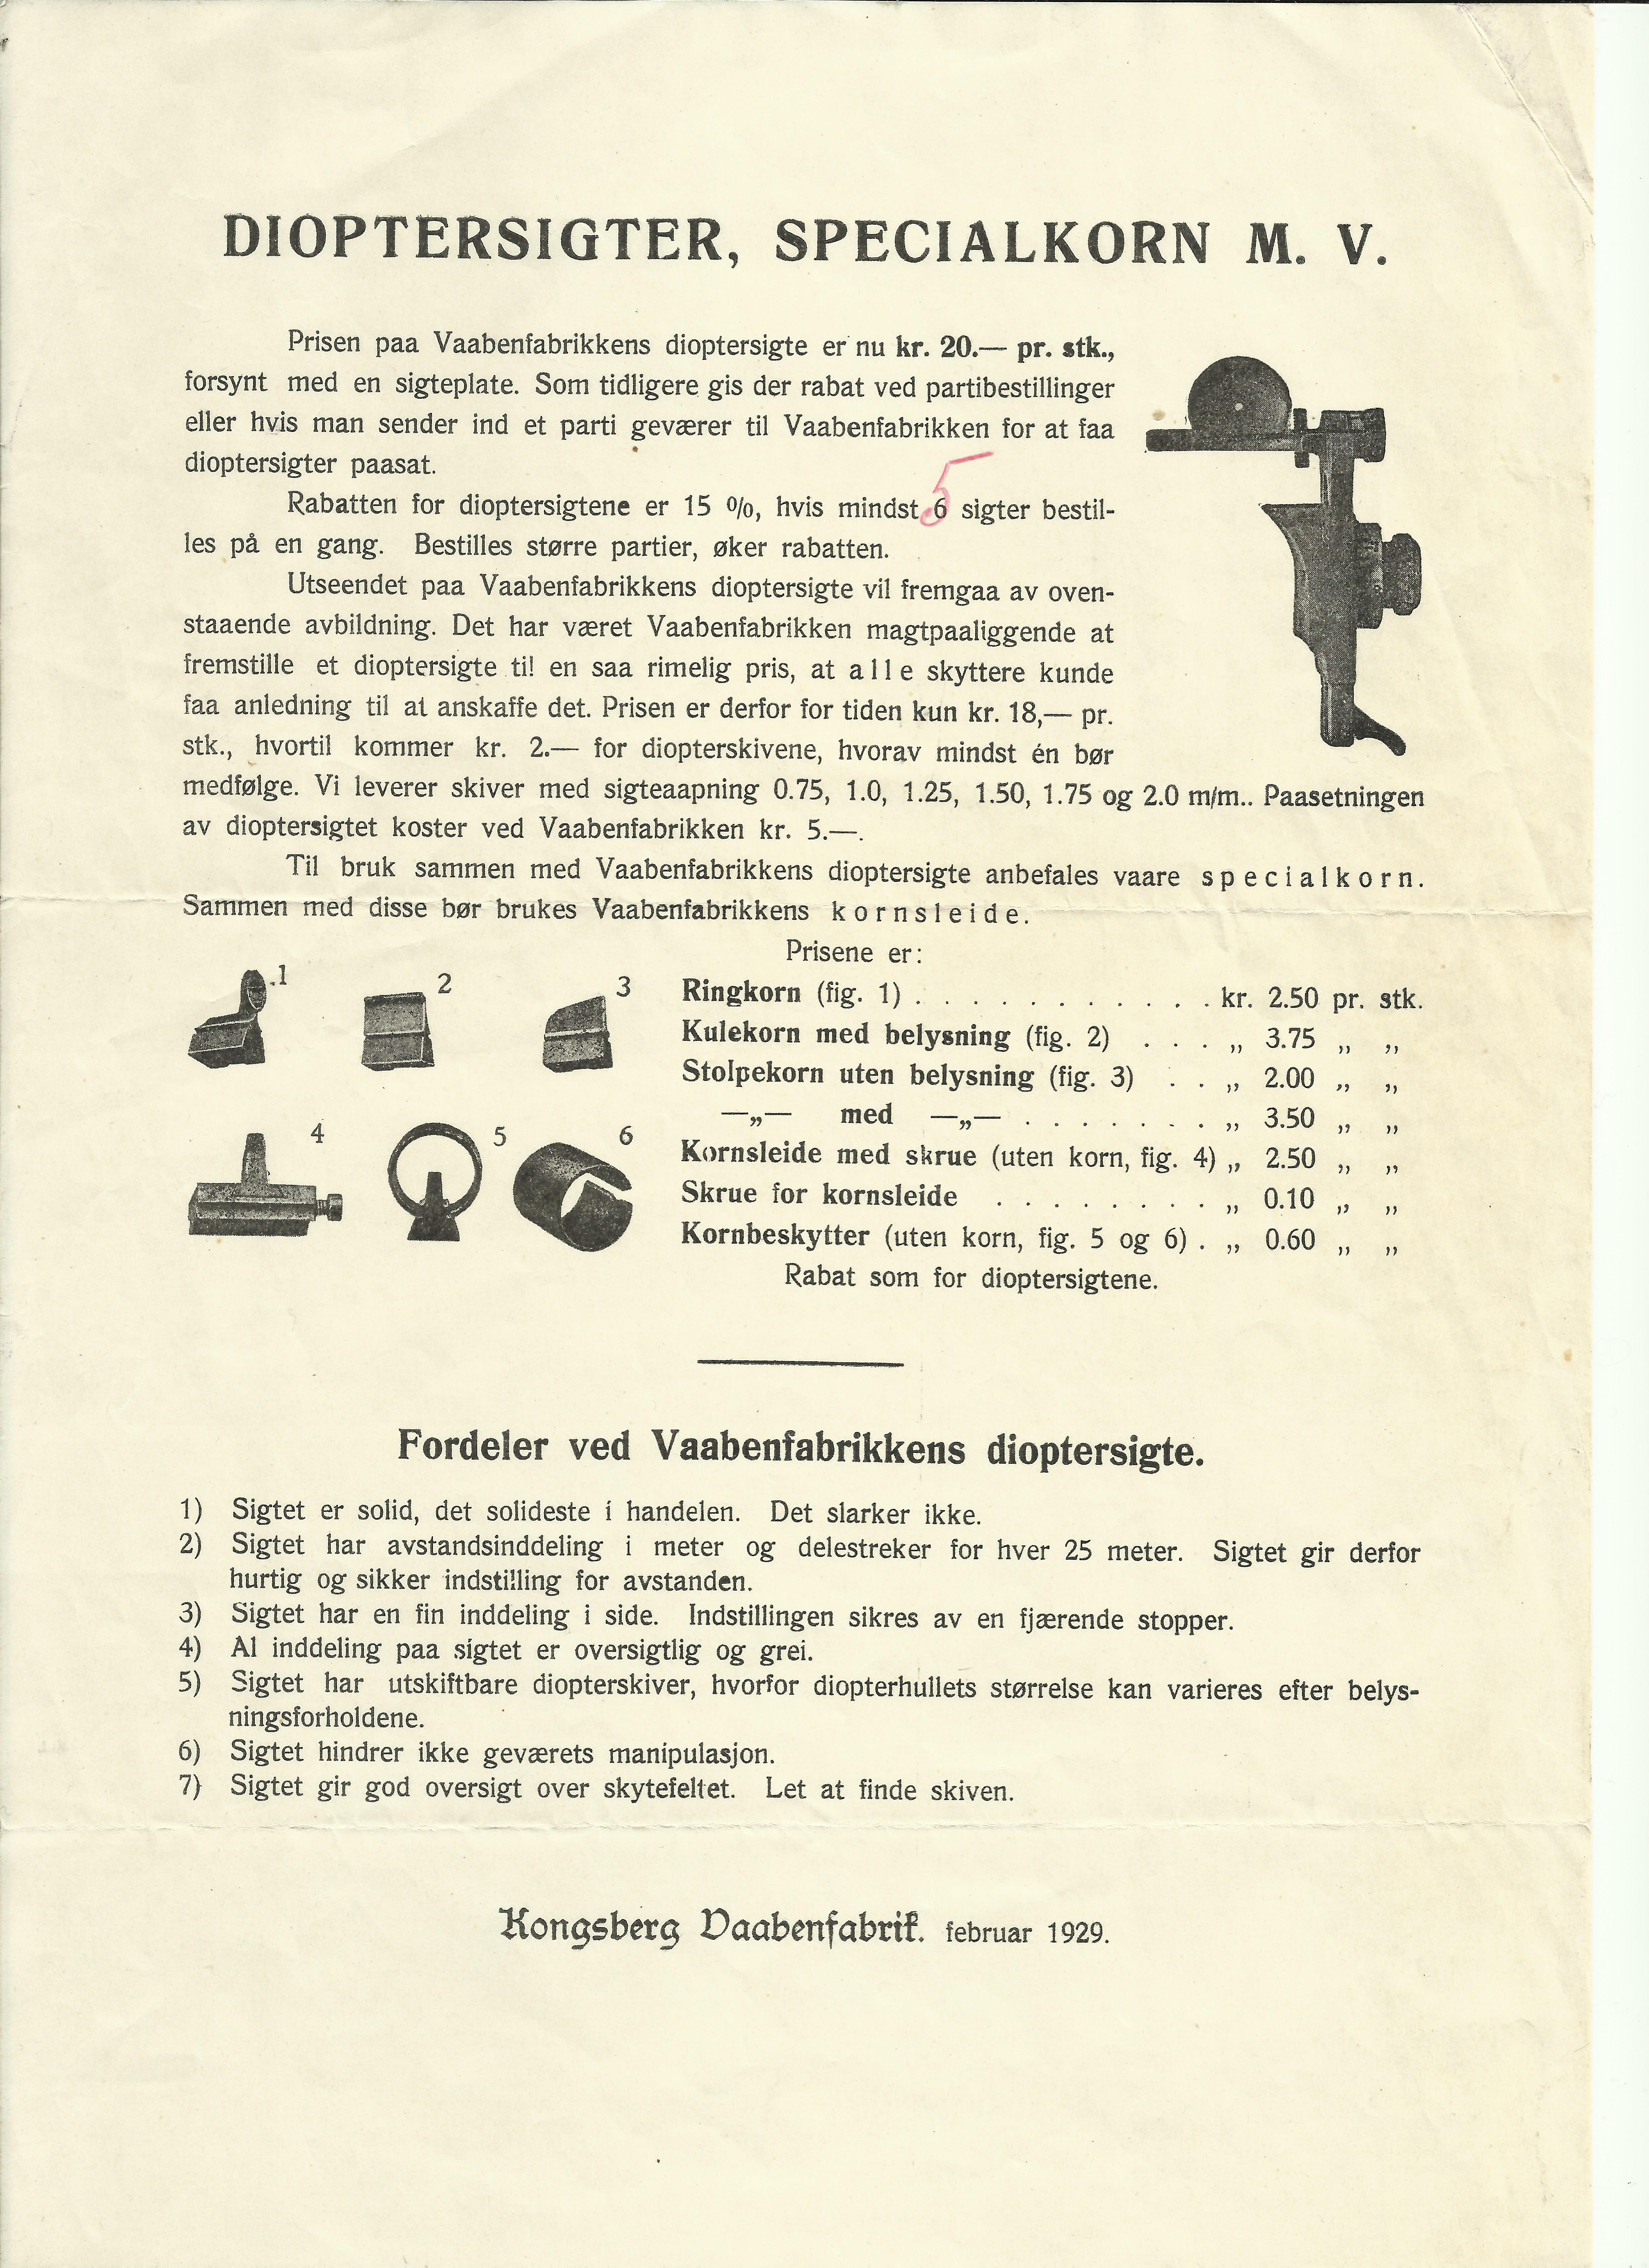 ./guns/utstyr/bilder/Utstyr-Dioptersikte-KV-M23-Krag-1929-1.jpg